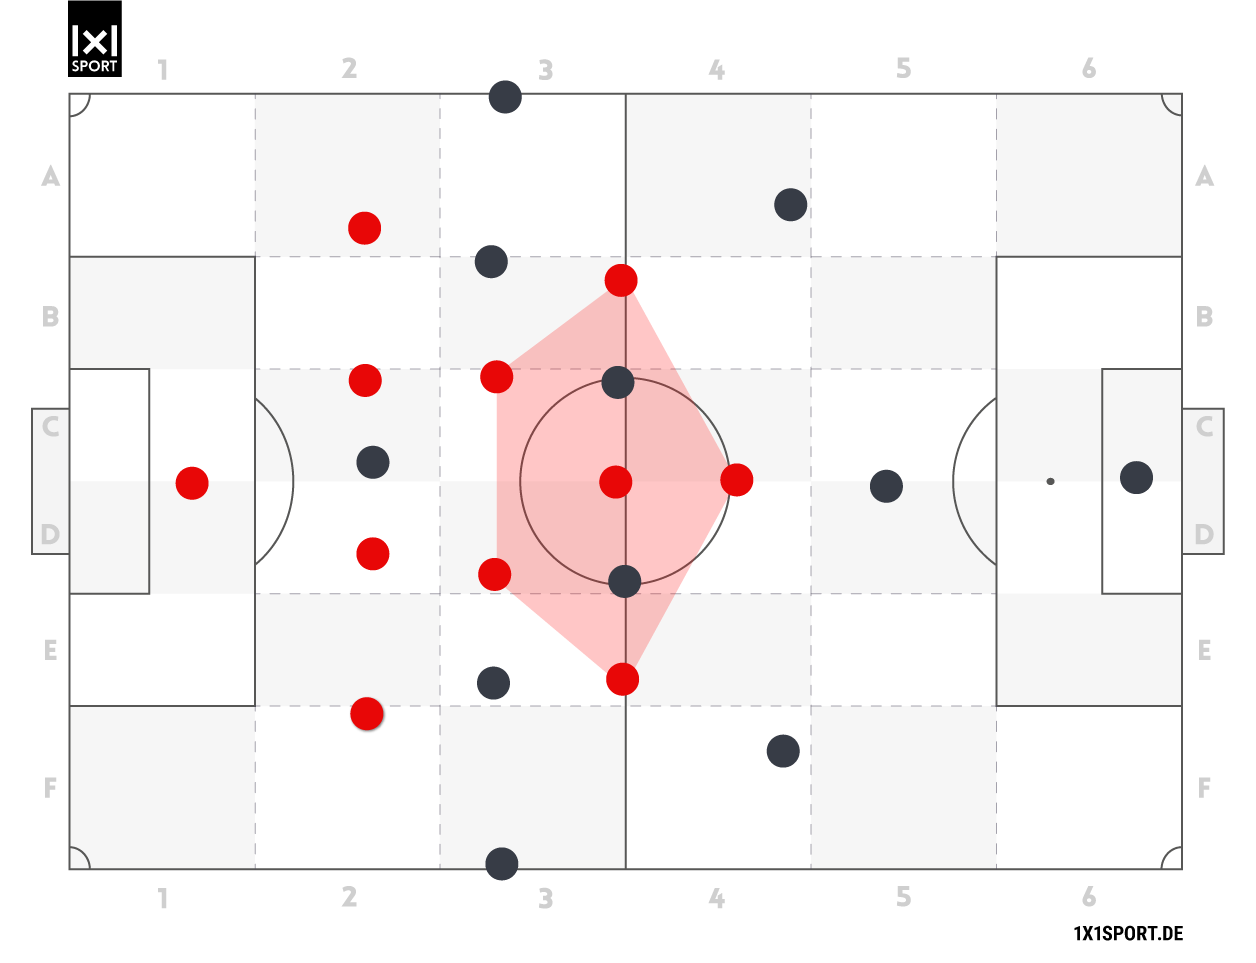 Die offensive Grundordnung 3-2-4-1 gegen die defensive Grundordnung 4-2-3-1. Der Stürmer und die 5 Mittelfeldspieler haben kurze Abstände zueinander und machen das Zentrum dadurch eng.